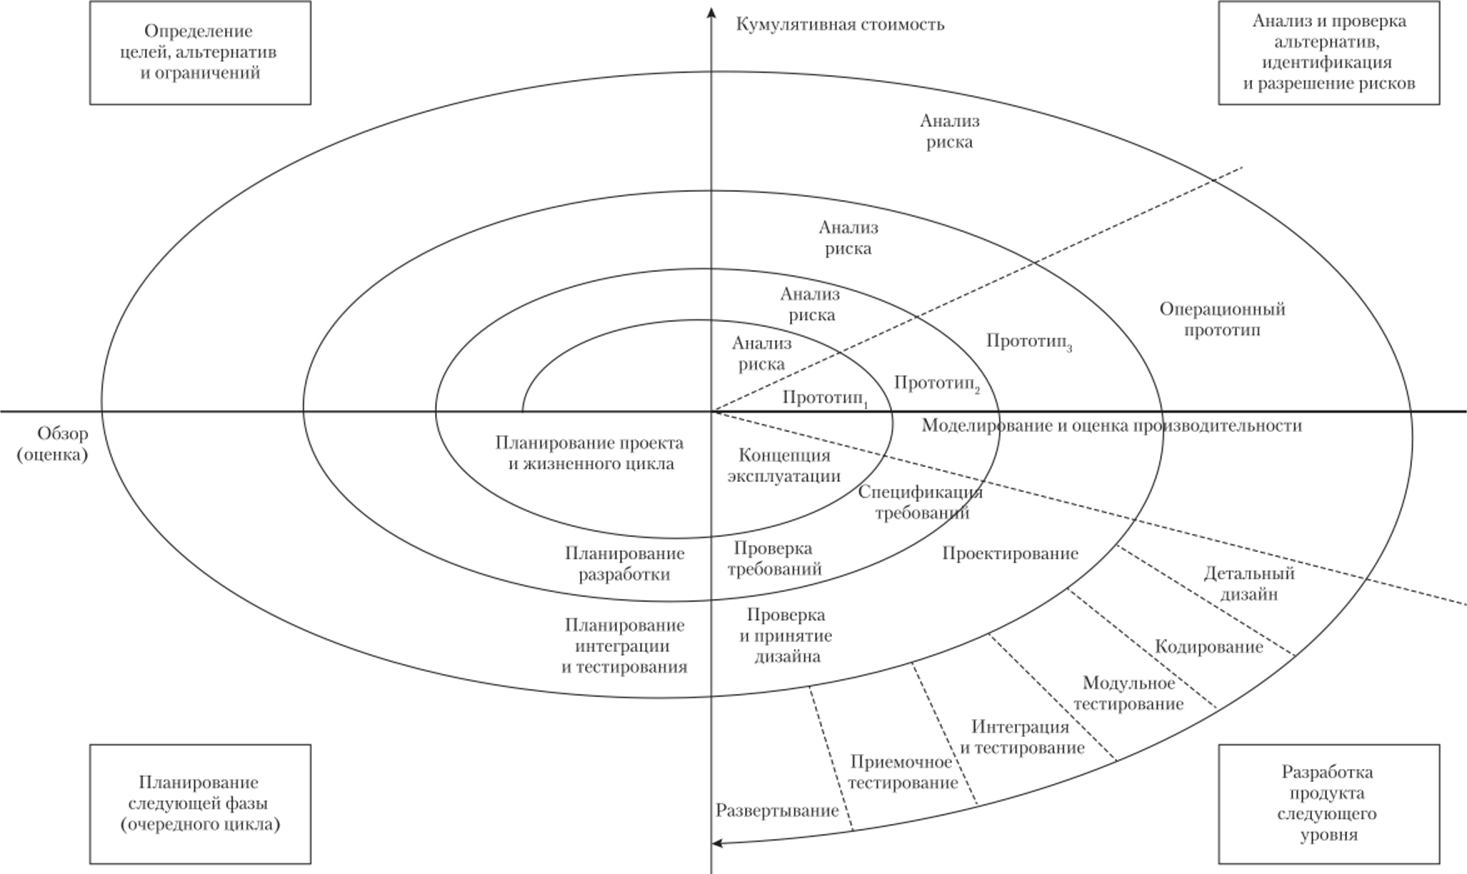 Модифицированная спиральная модель жизненного цикла ИС (по Б. Боэму).